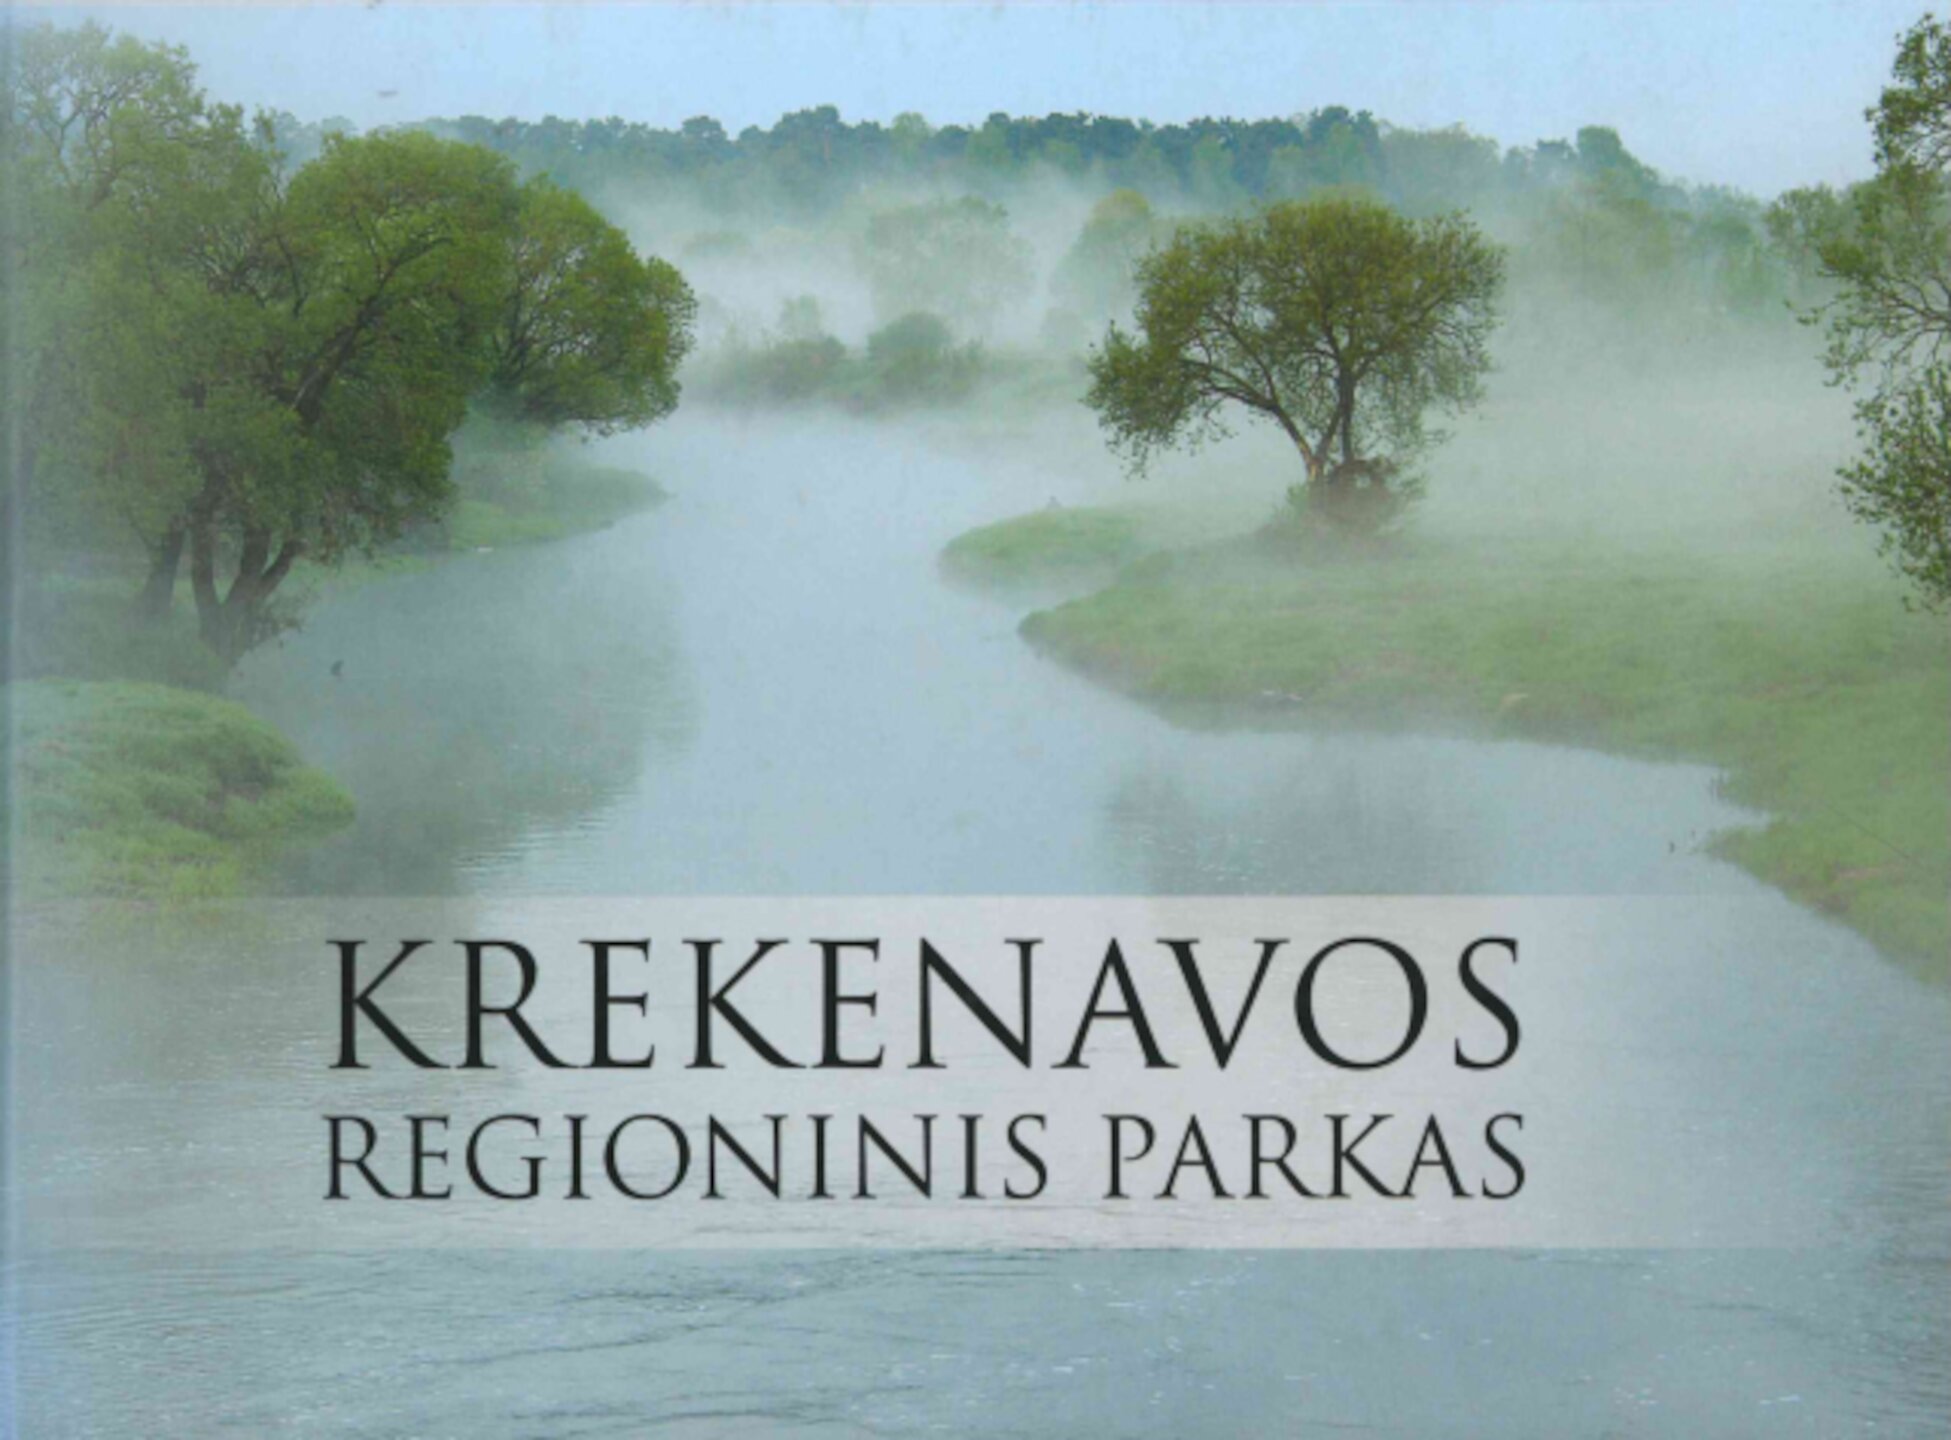 Krekenavos-regioninis-parkas